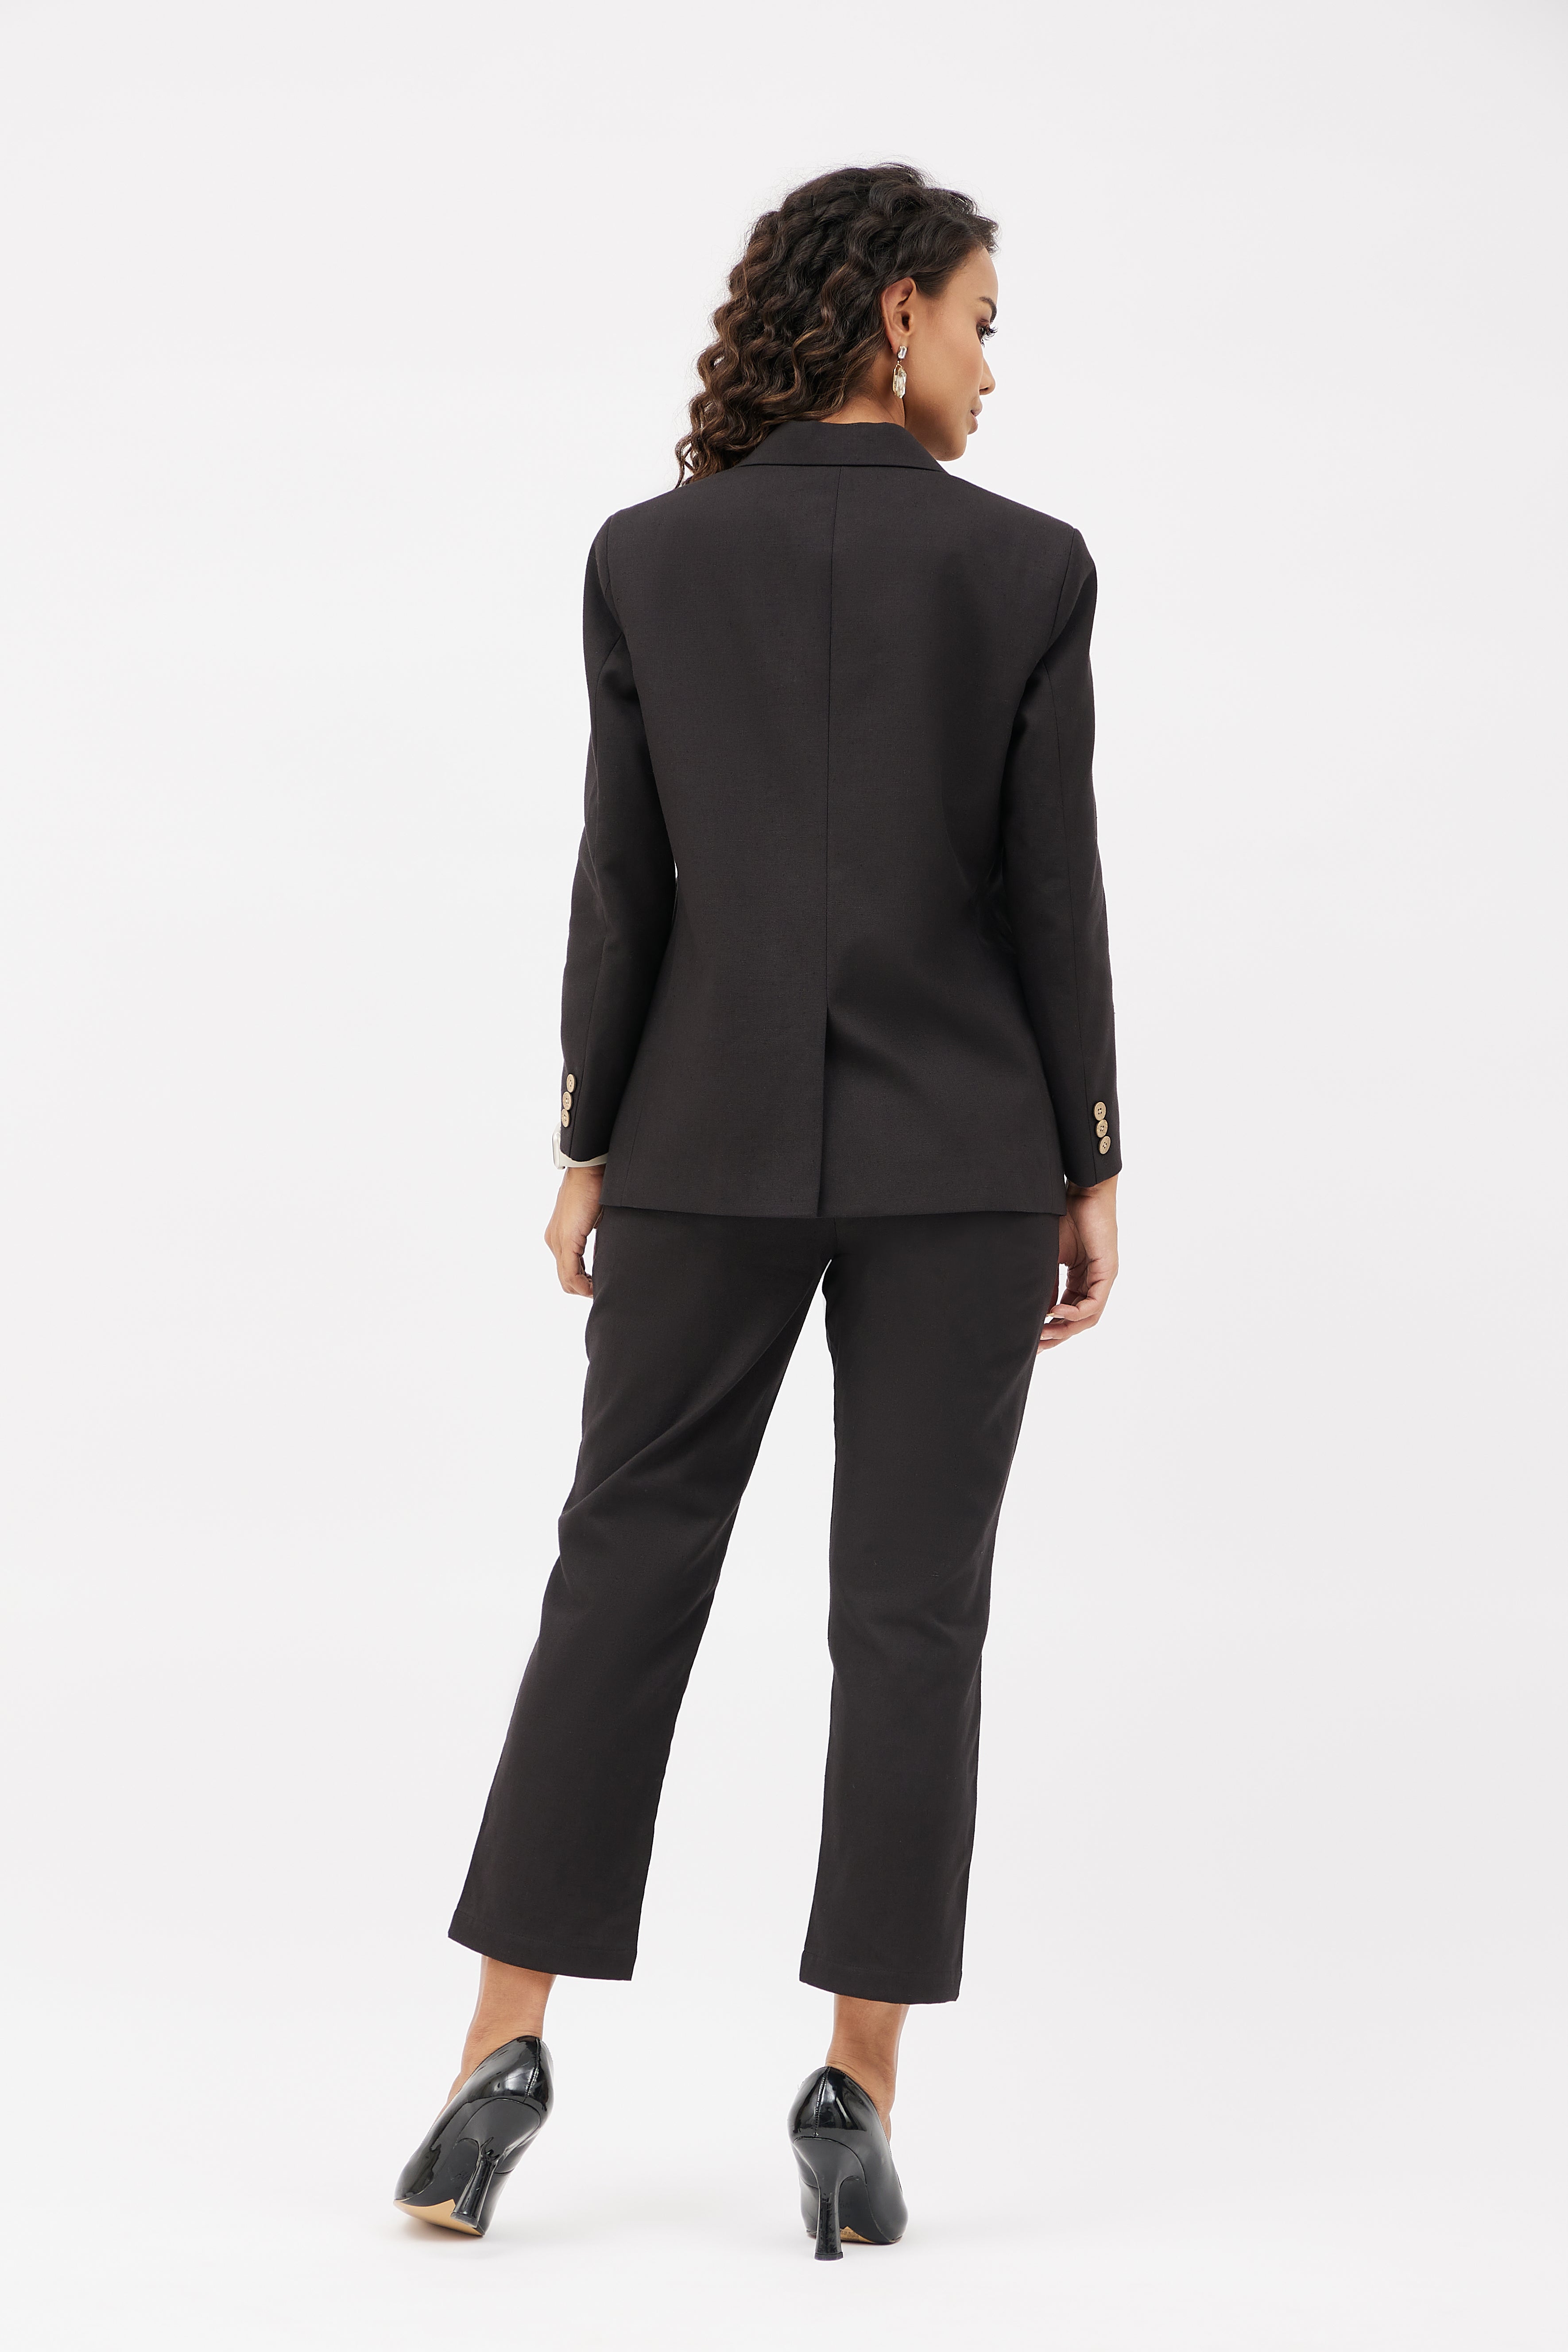 Classic Work Blazer & Trouser Women's Linen Pant Suit Set - Black